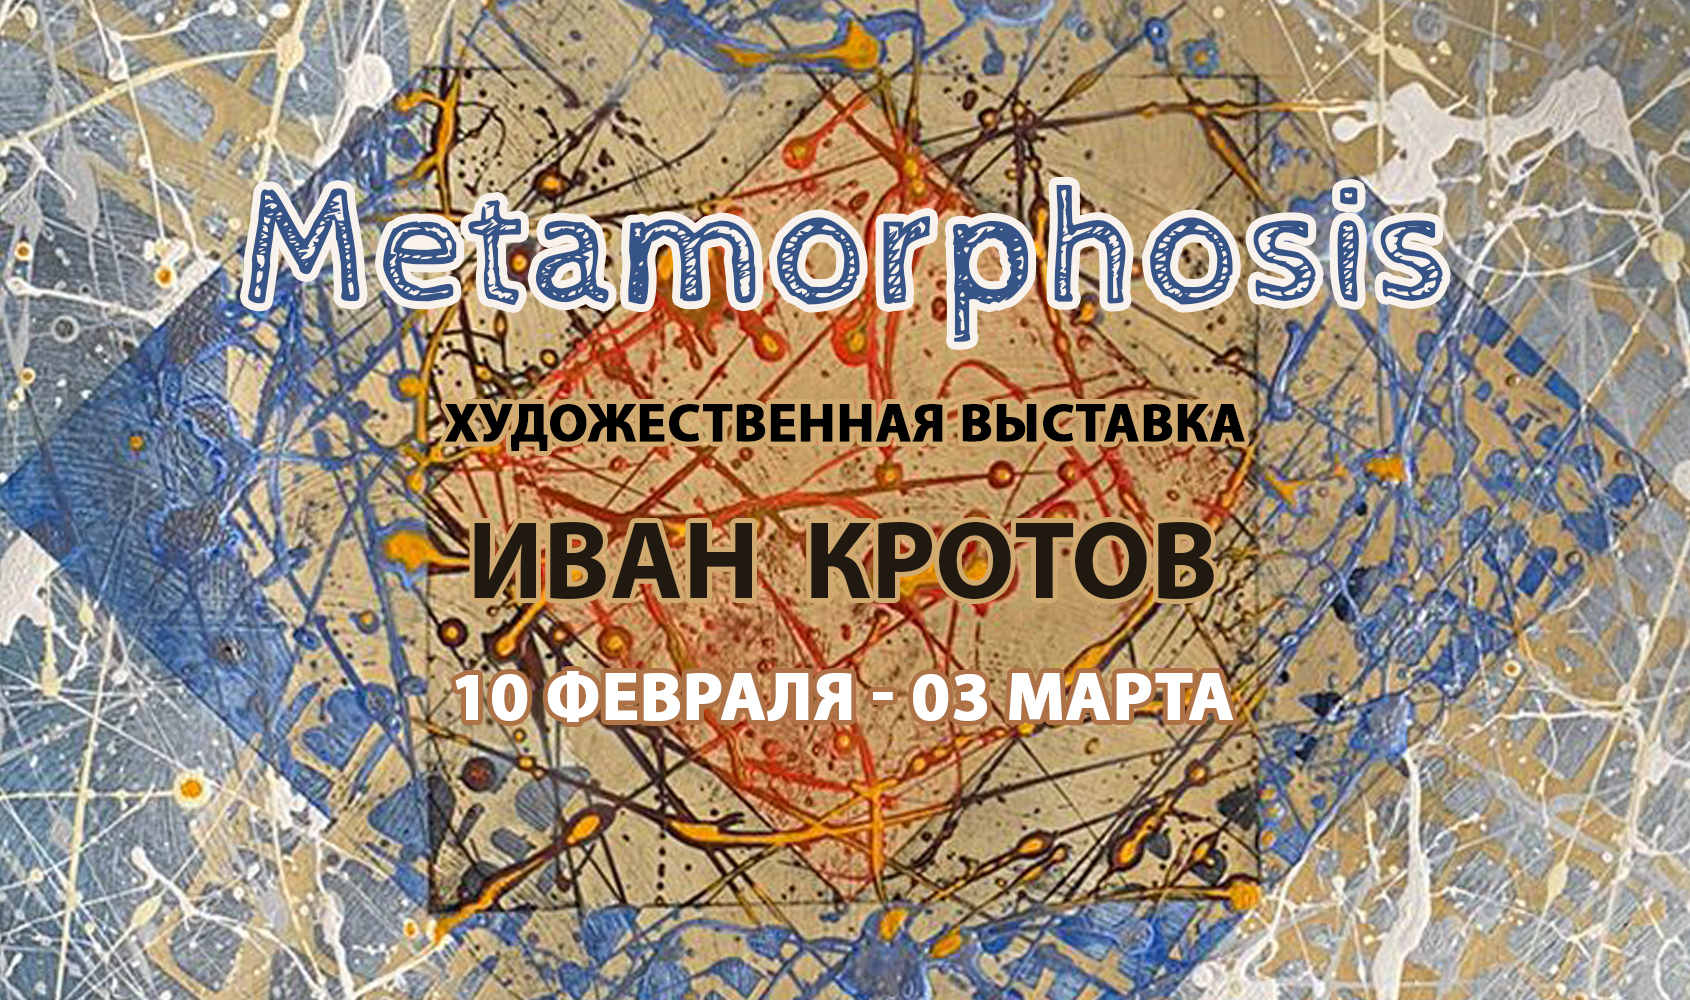 Персональная художественная выставка Ивана Кротова «Metamorphosis» / 10 февраля – 3 марта